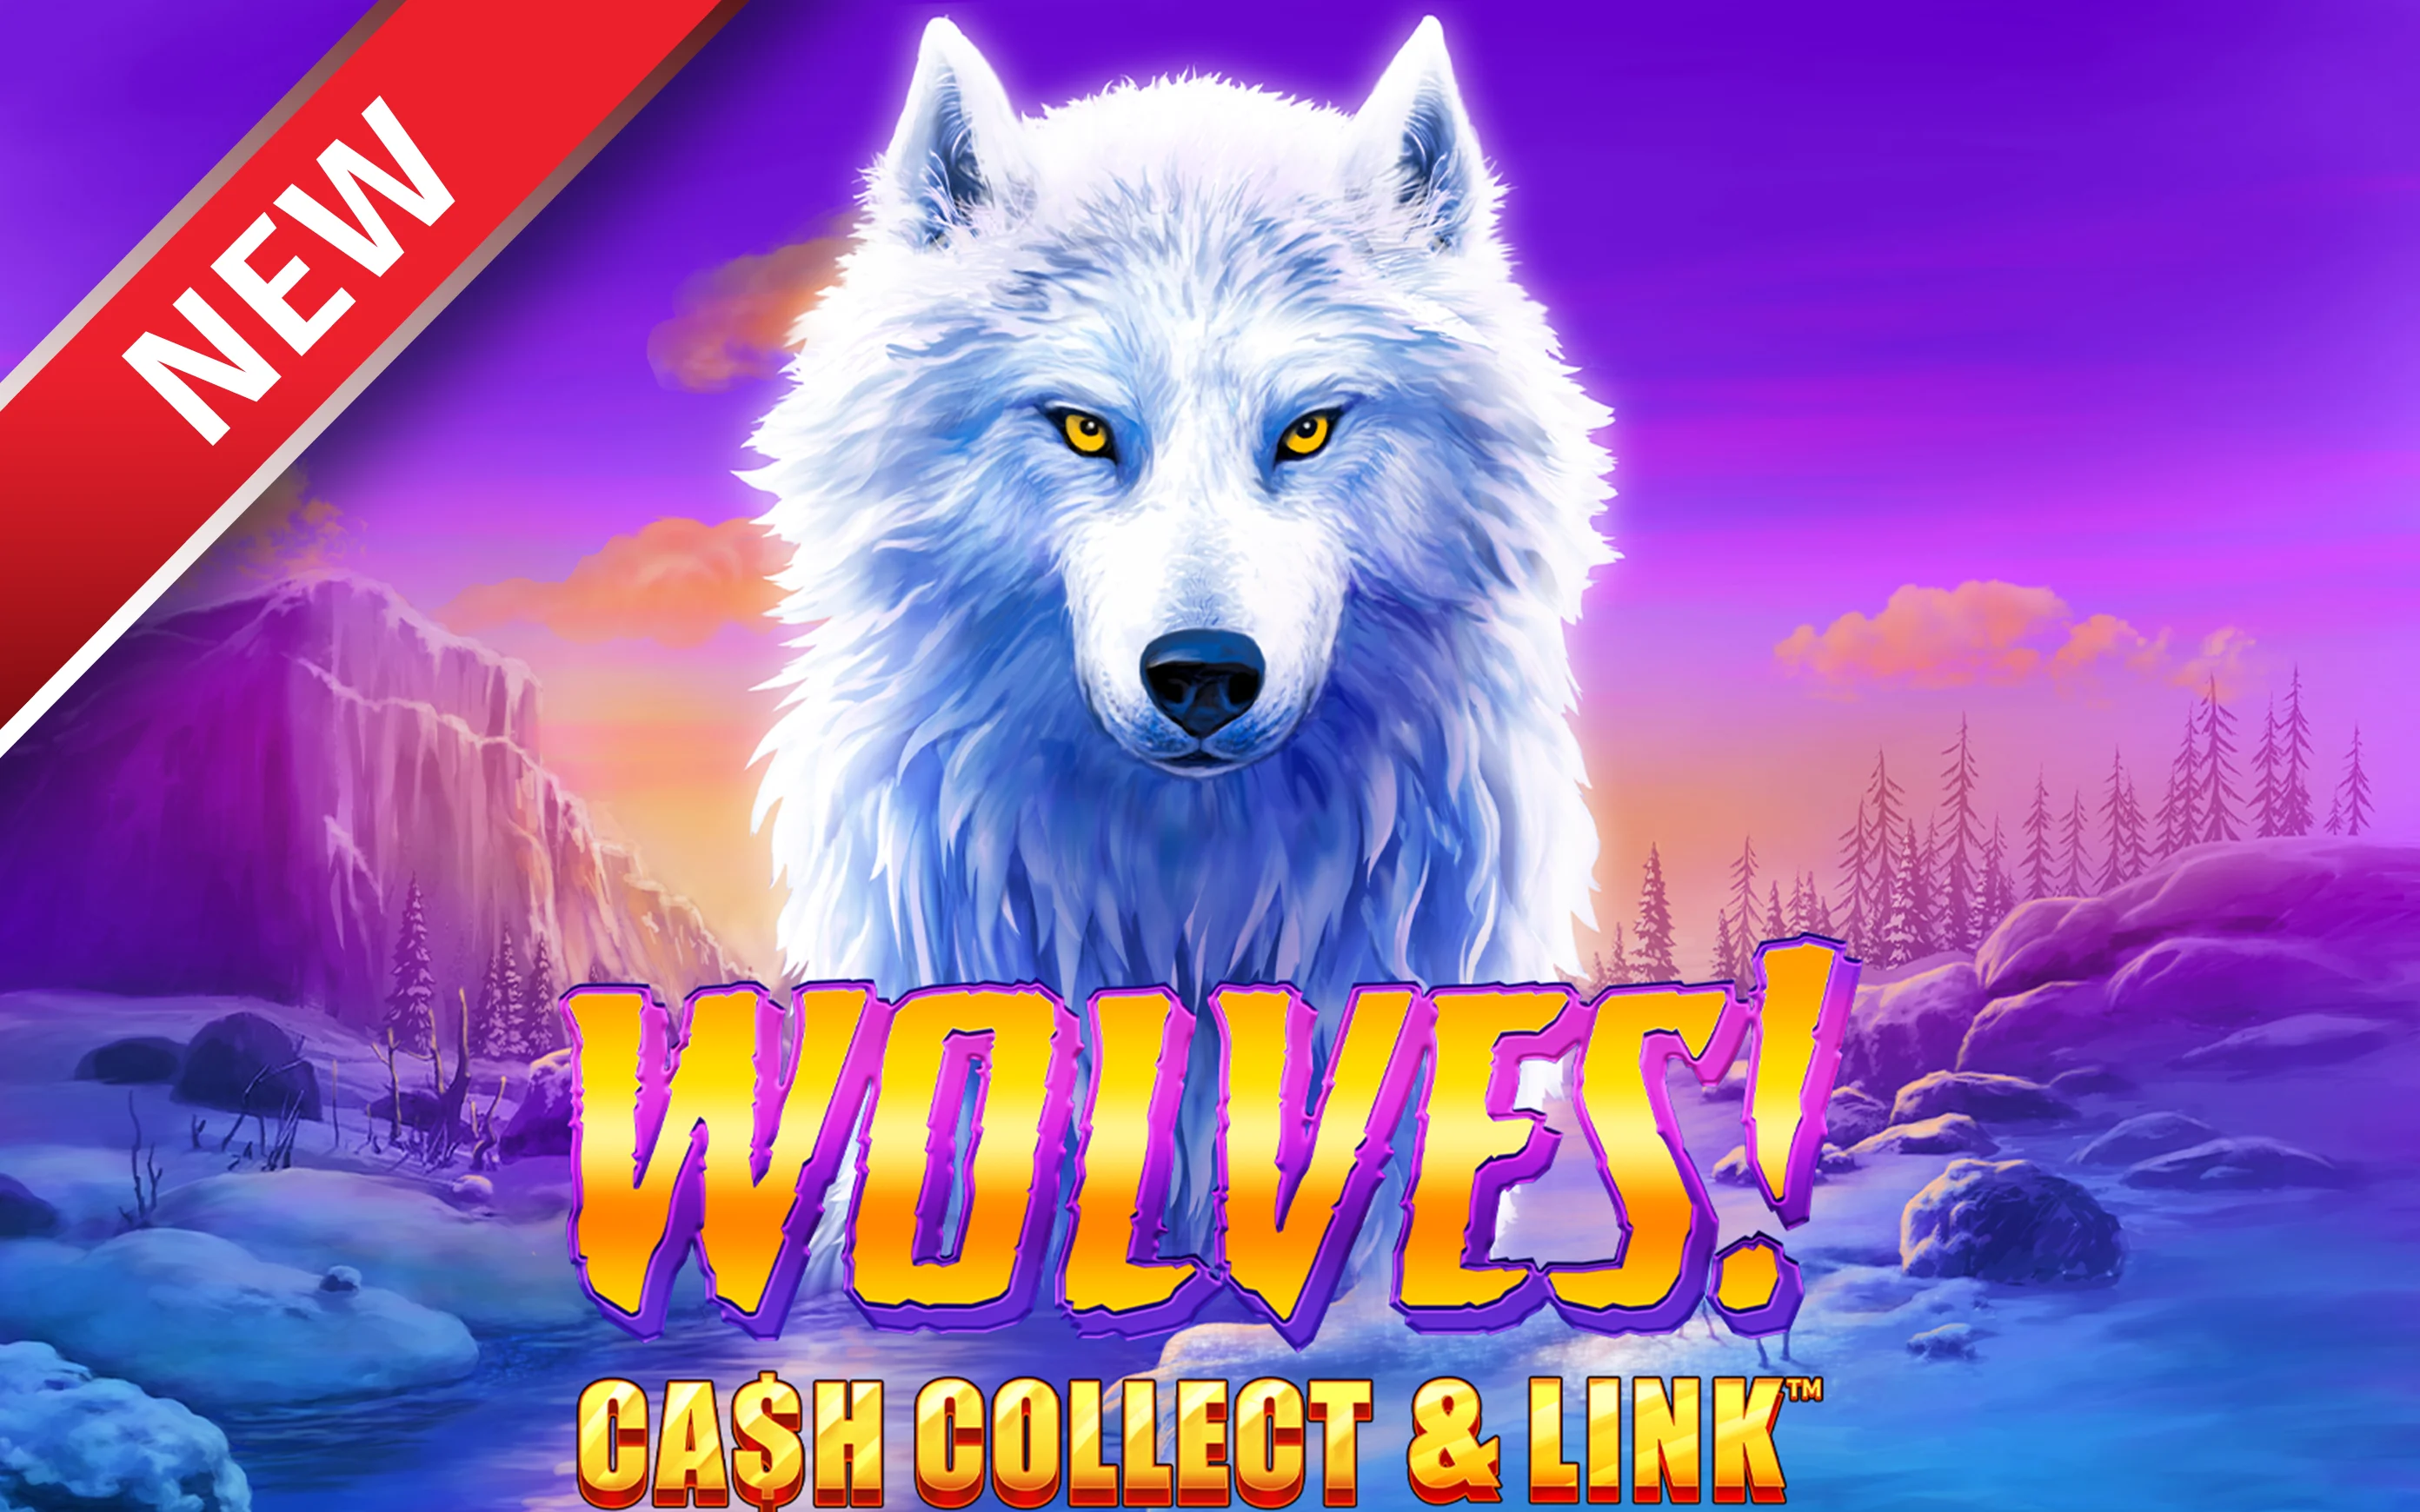 Παίξτε Wolves! Cash Collect & Link™ στο online καζίνο Starcasino.be